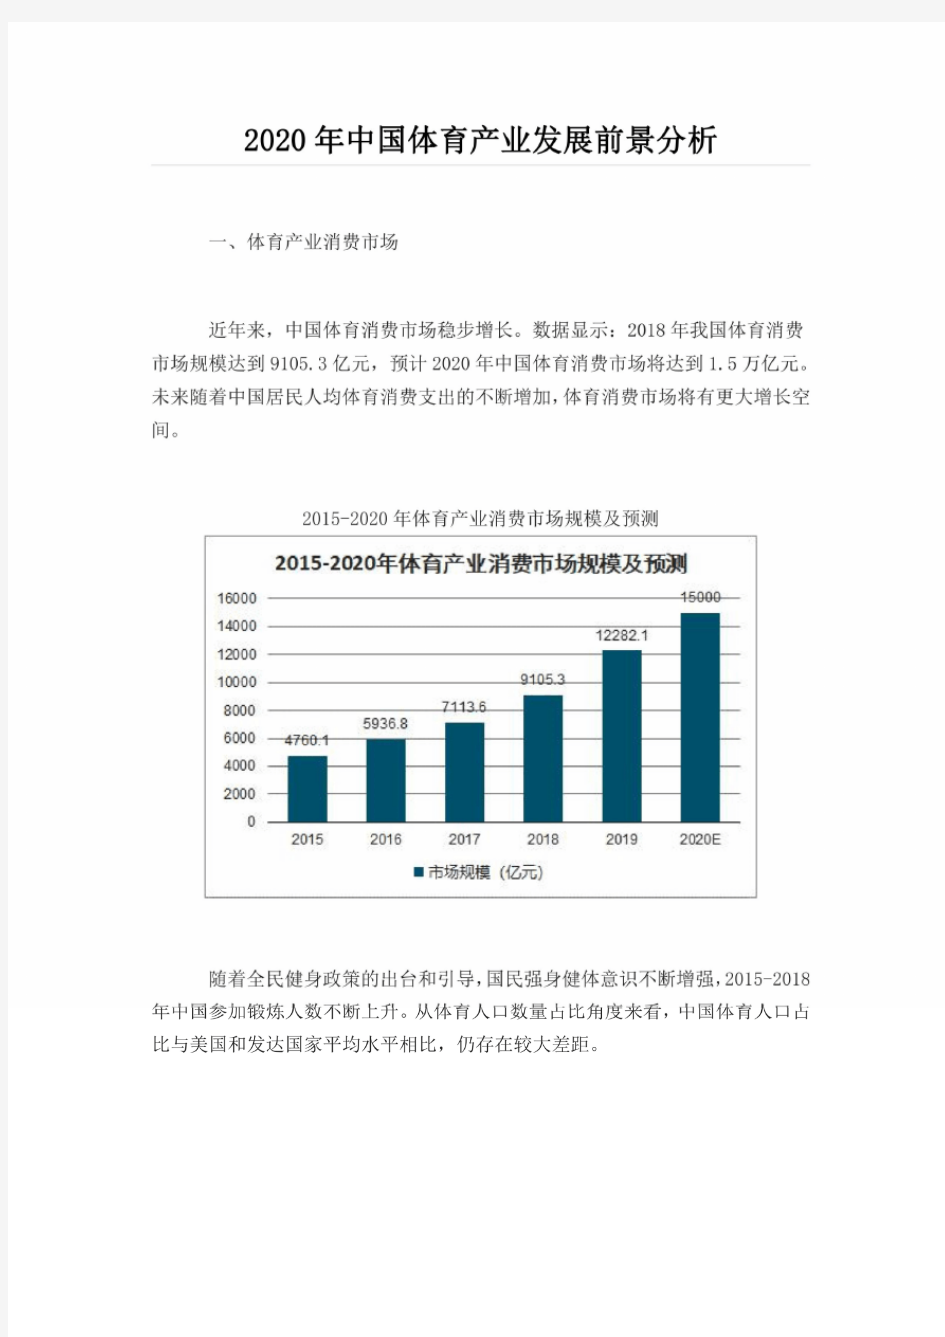 2020年中国体育产业发展前景分析